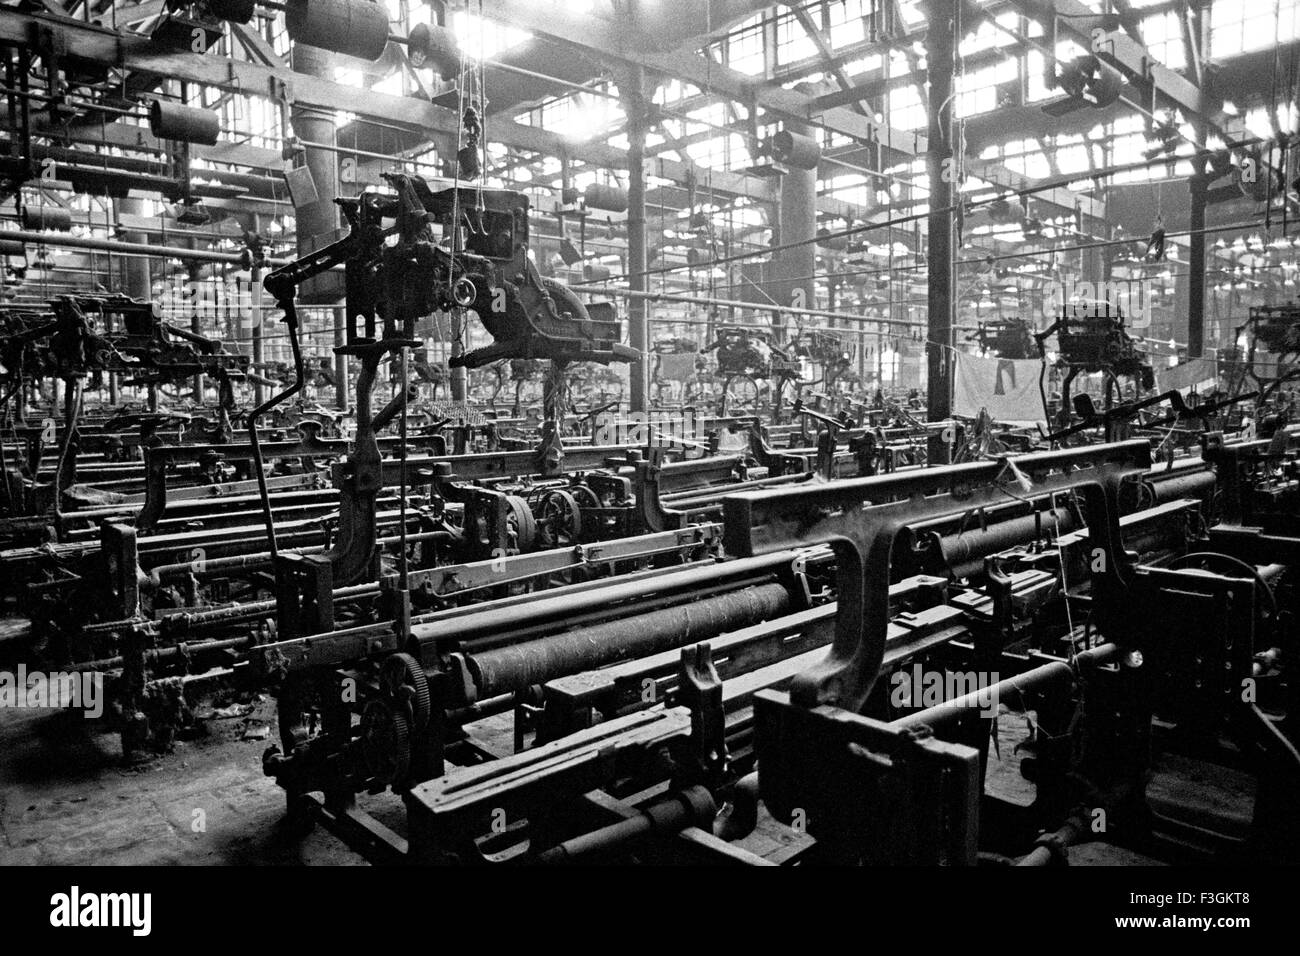 Fermé usine de textile en raison de grève Bombay Mumbai Maharashtra Inde Asie asiatique Indien ancien vintage 1900 image Banque D'Images